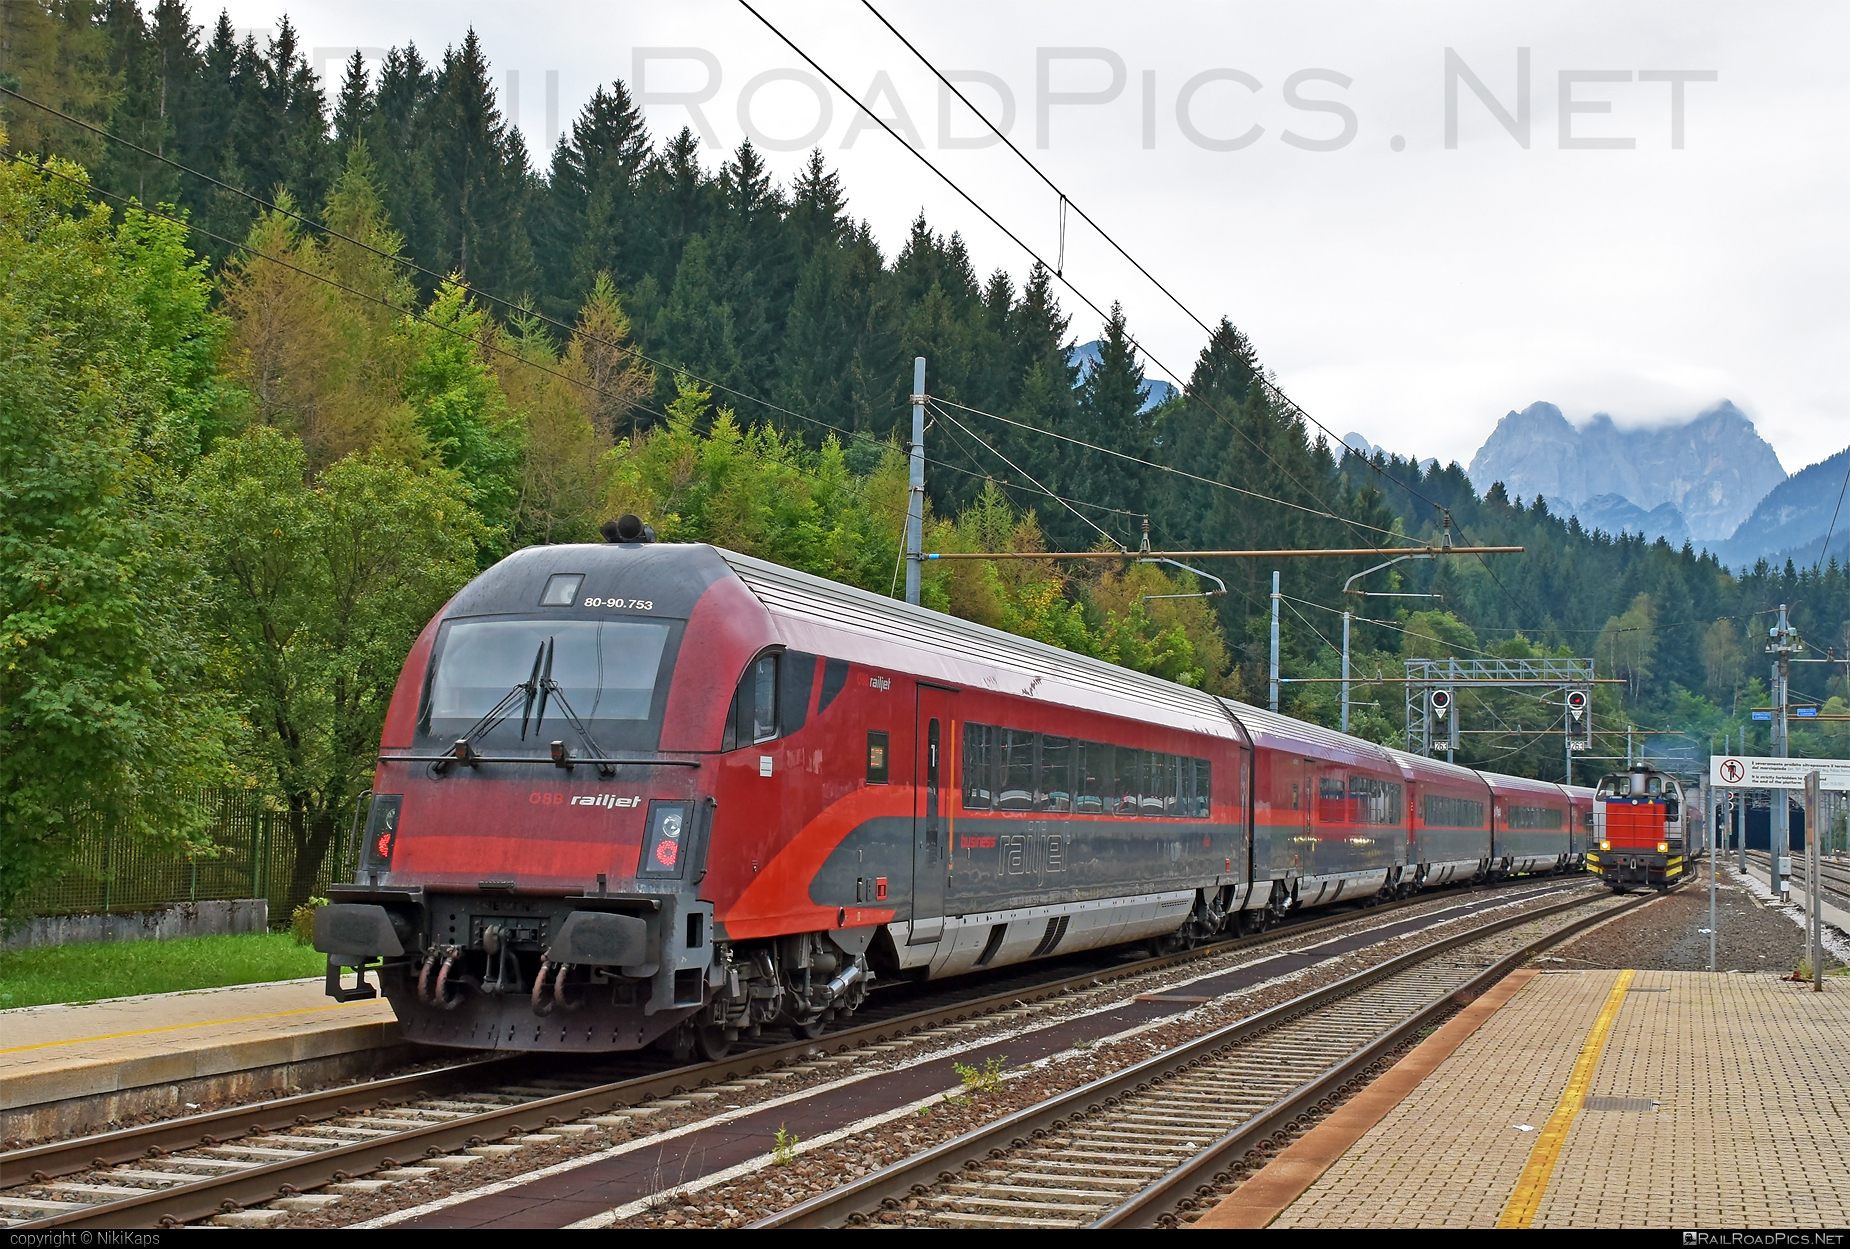 Class A - Afmpz - Siemens Viaggio Comfort control car - 80-90.753 operated by Österreichische Bundesbahnen #afmpz #obb #obbrailjet #osterreichischebundesbahnen #railjet